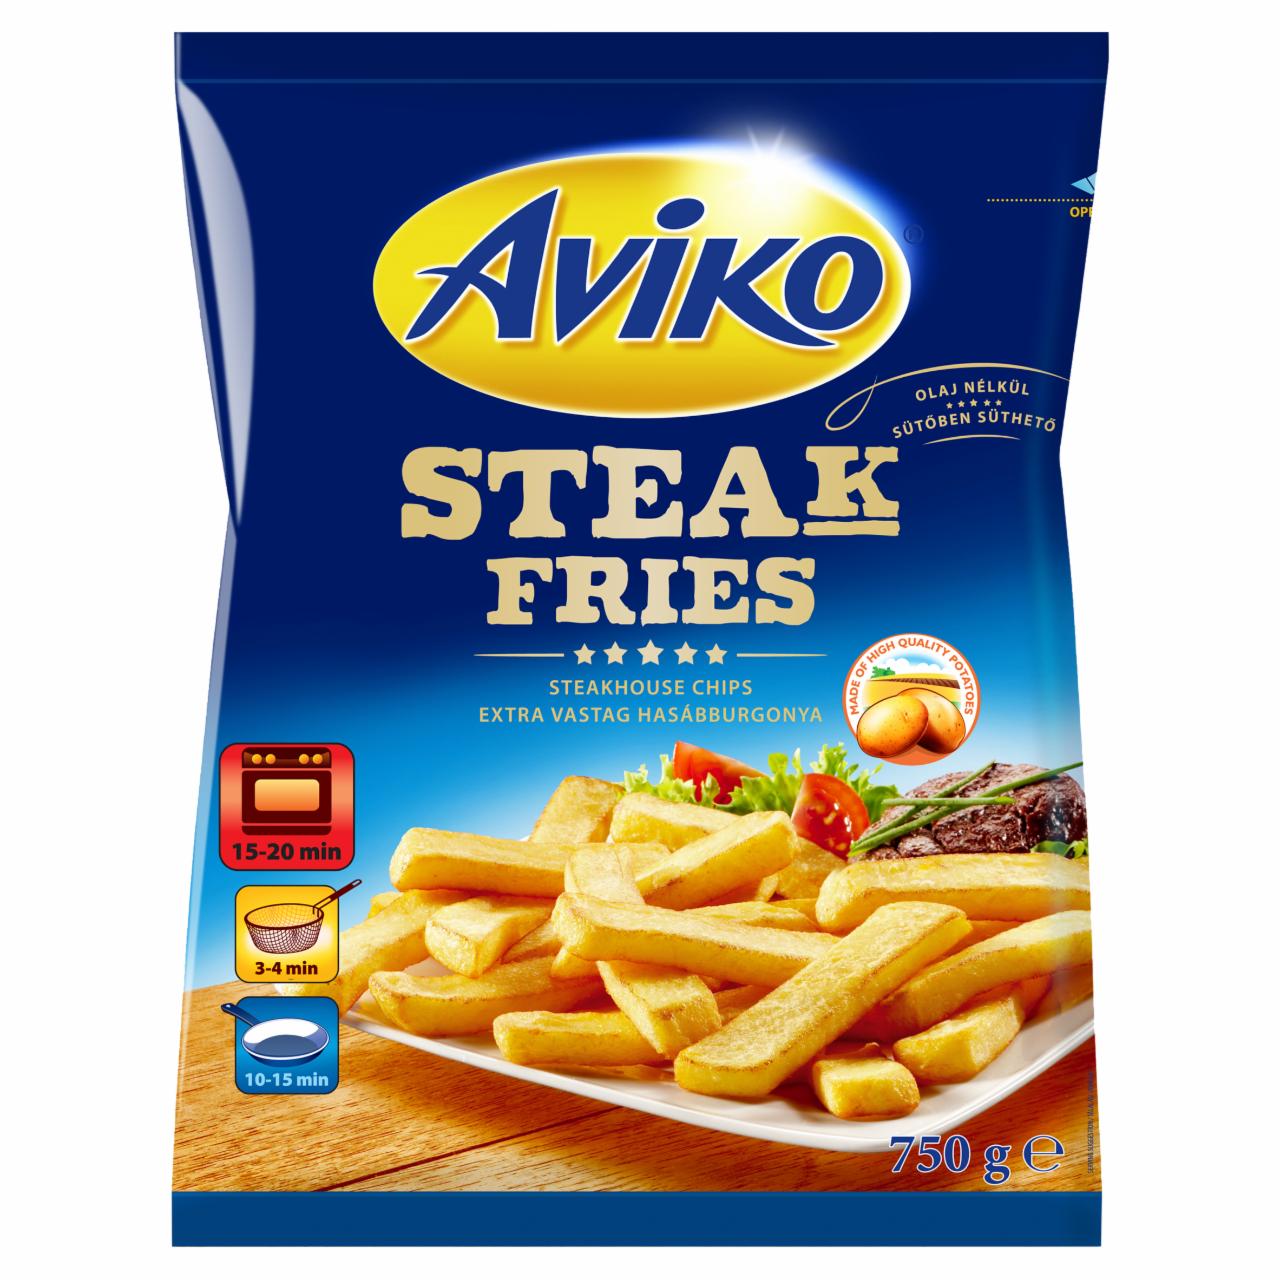 Képek - Aviko Steak Fries elősütött és gyorsfagyasztott, extra vastag hasábburgonya 750 g